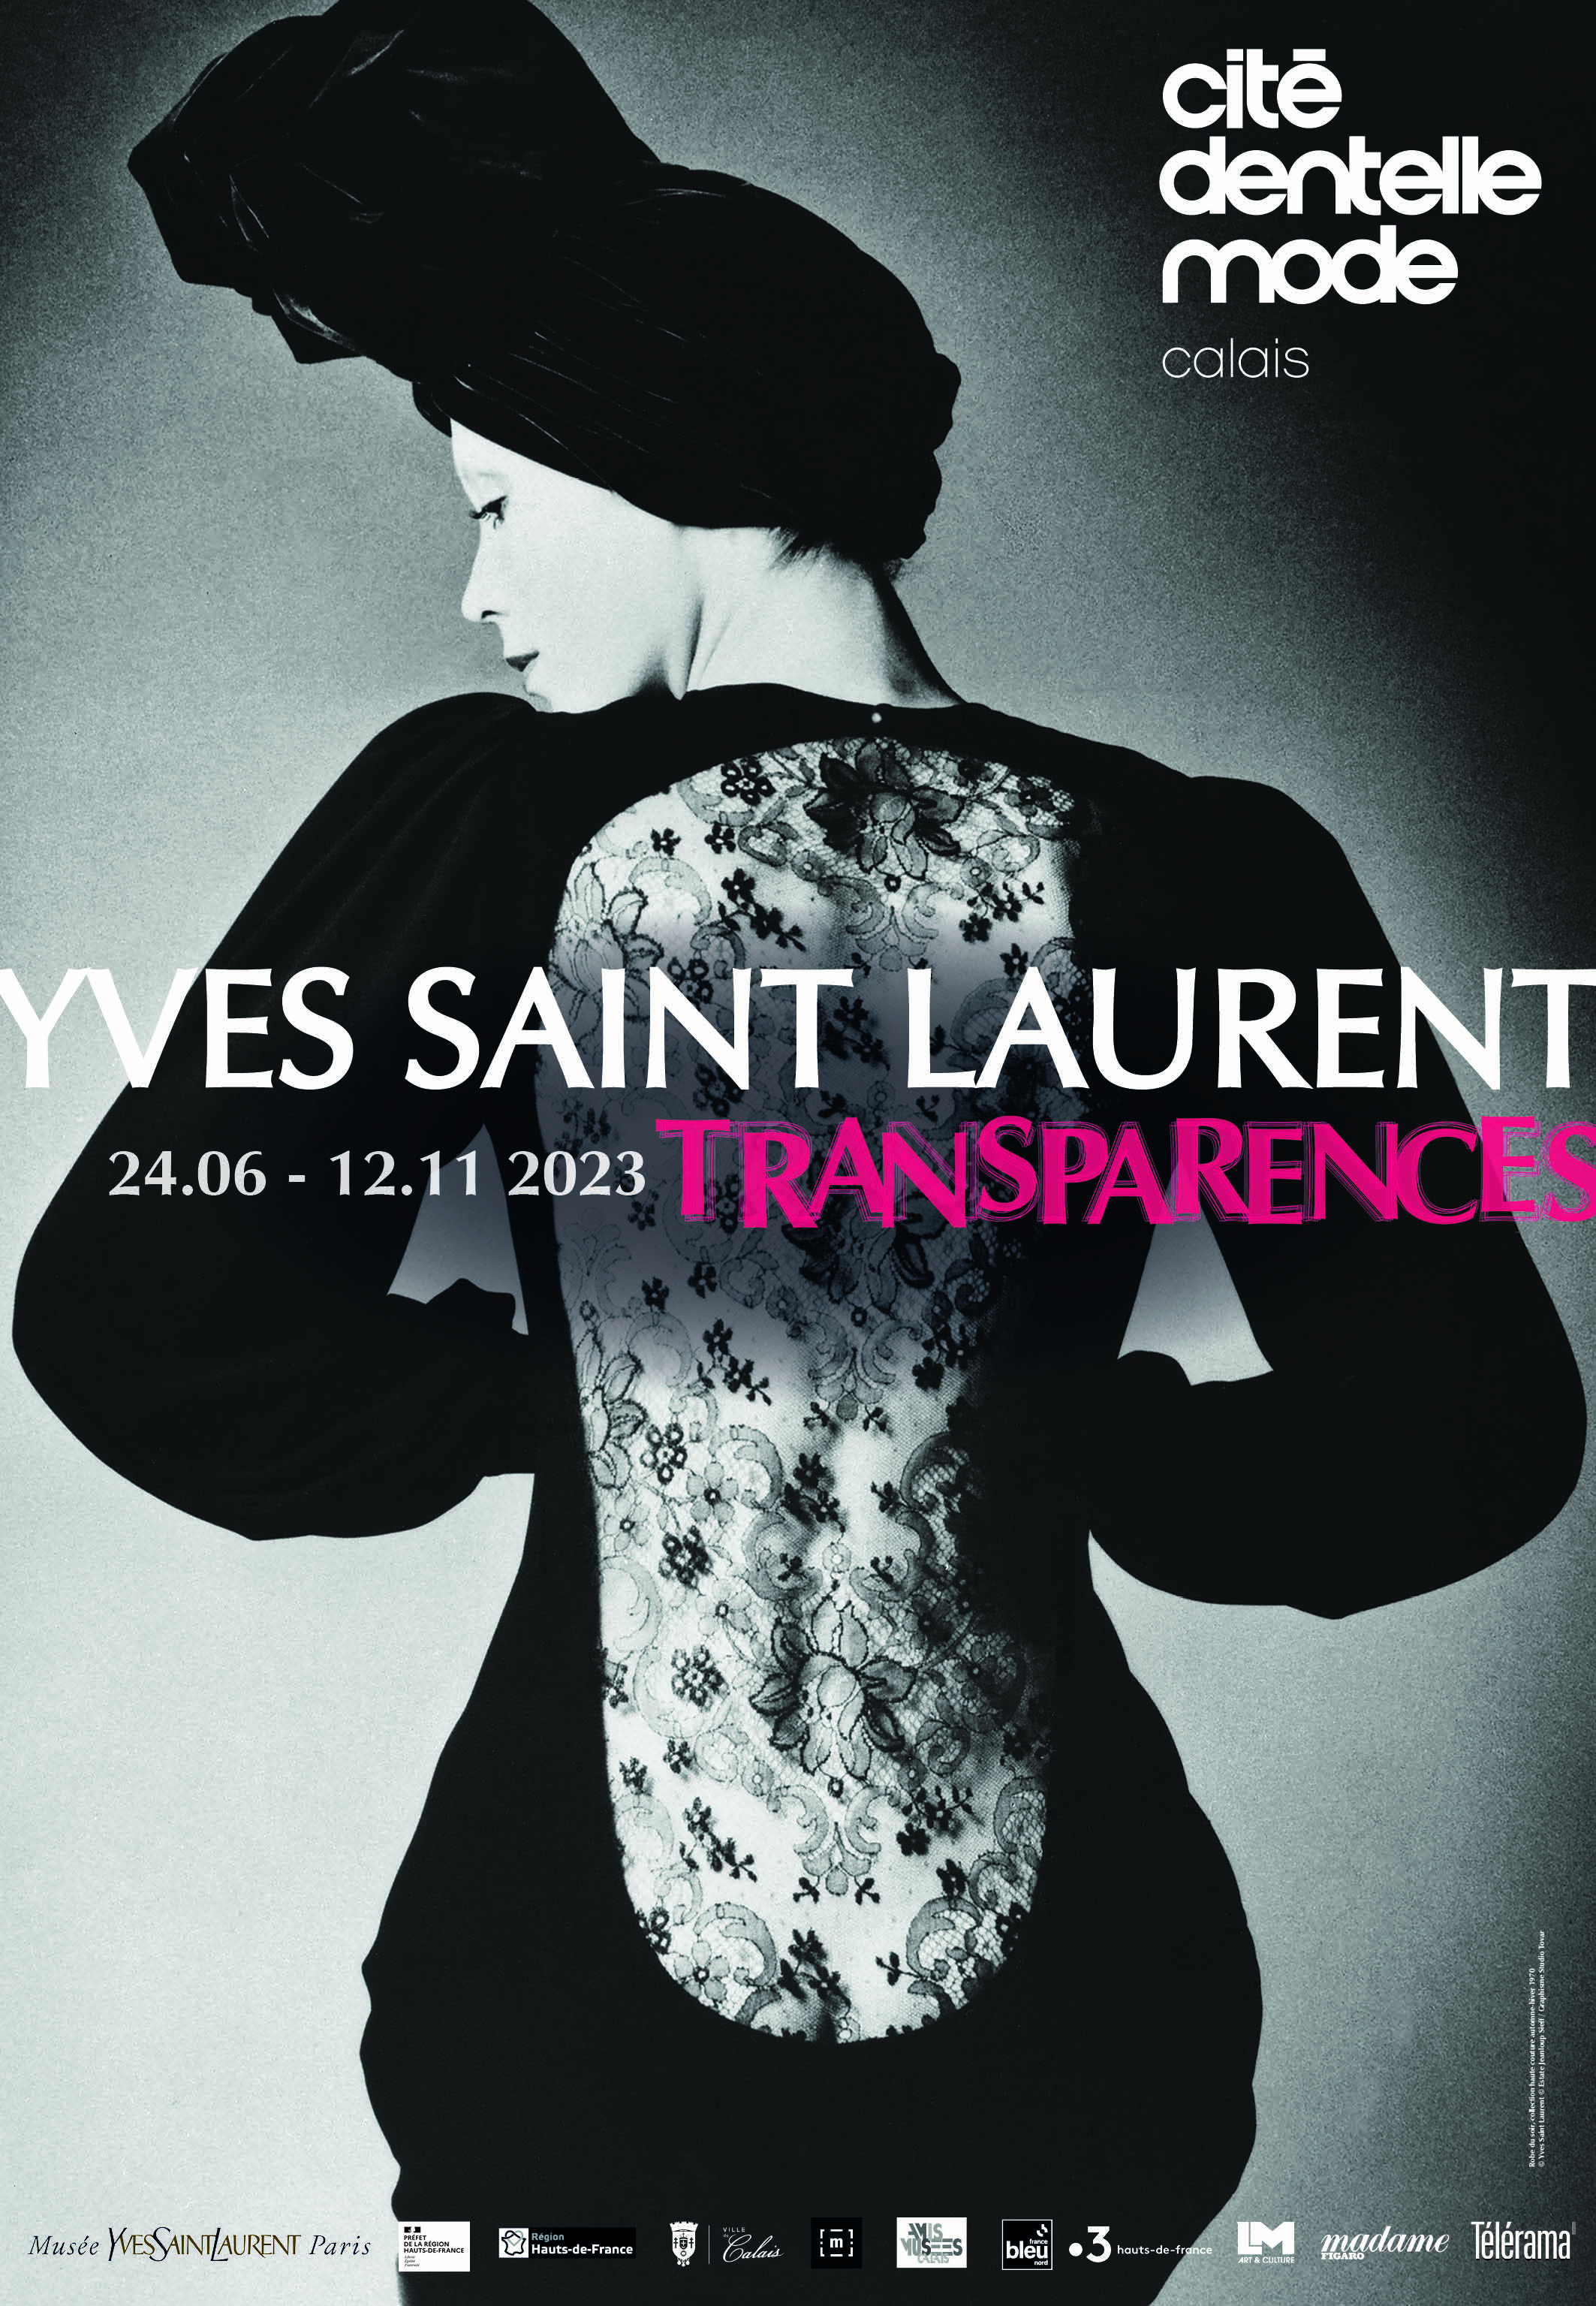 Affiche exposition Yves Saint Laurent Transparences Cité dentelle mode